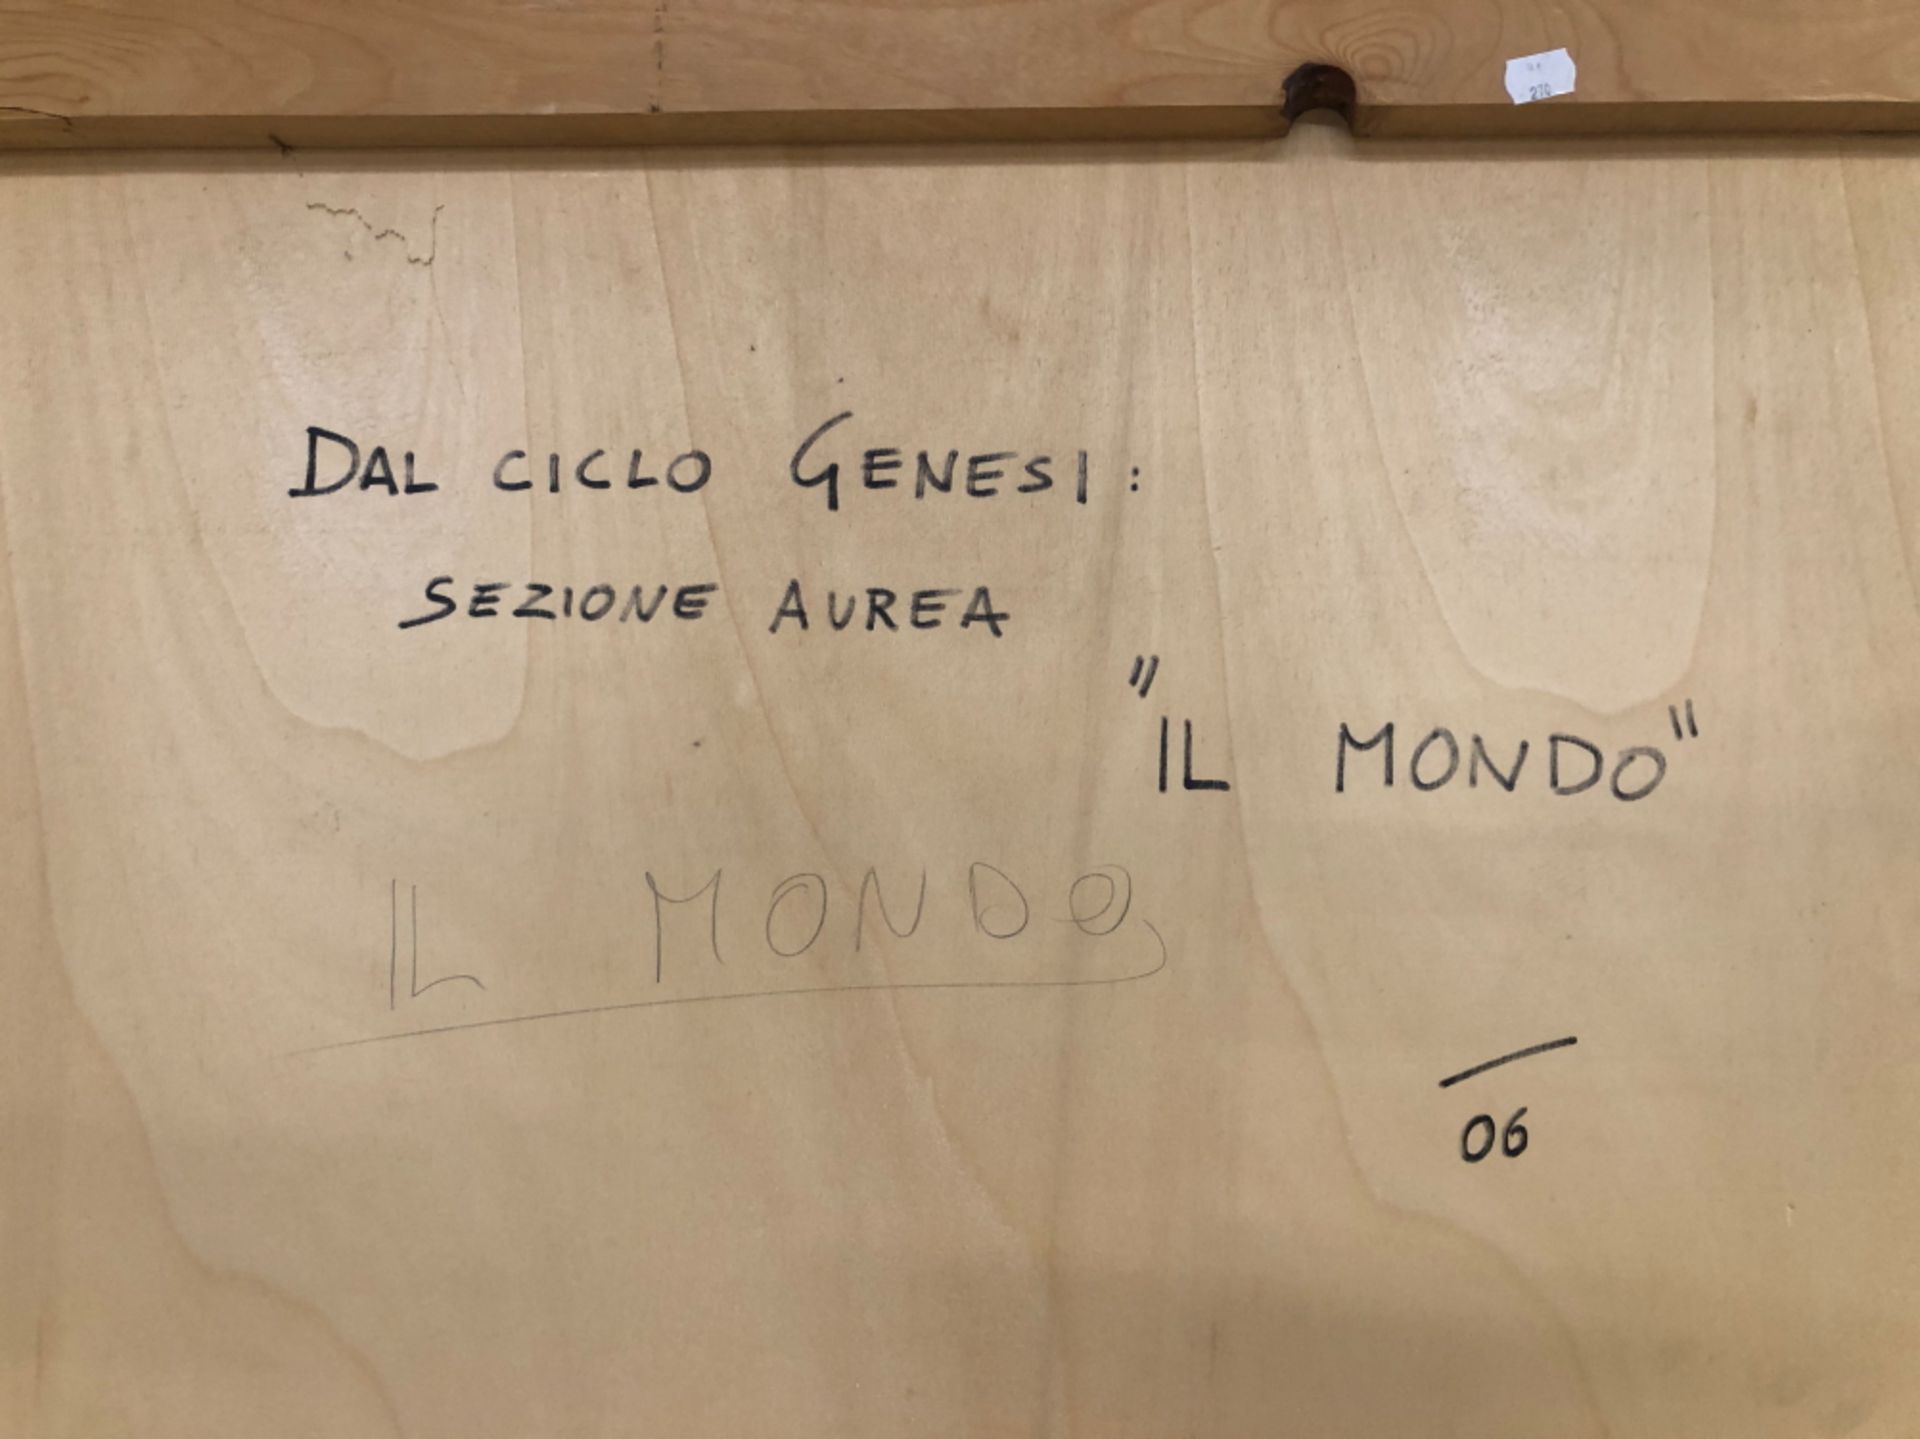 CONTEMPORARY ITALIAN SCHOOL, ARR, DAL CICLO GENESI, SEZIONE AUREA, IL MONDO I, INDISTINCTLY SIGNED - Image 19 of 21